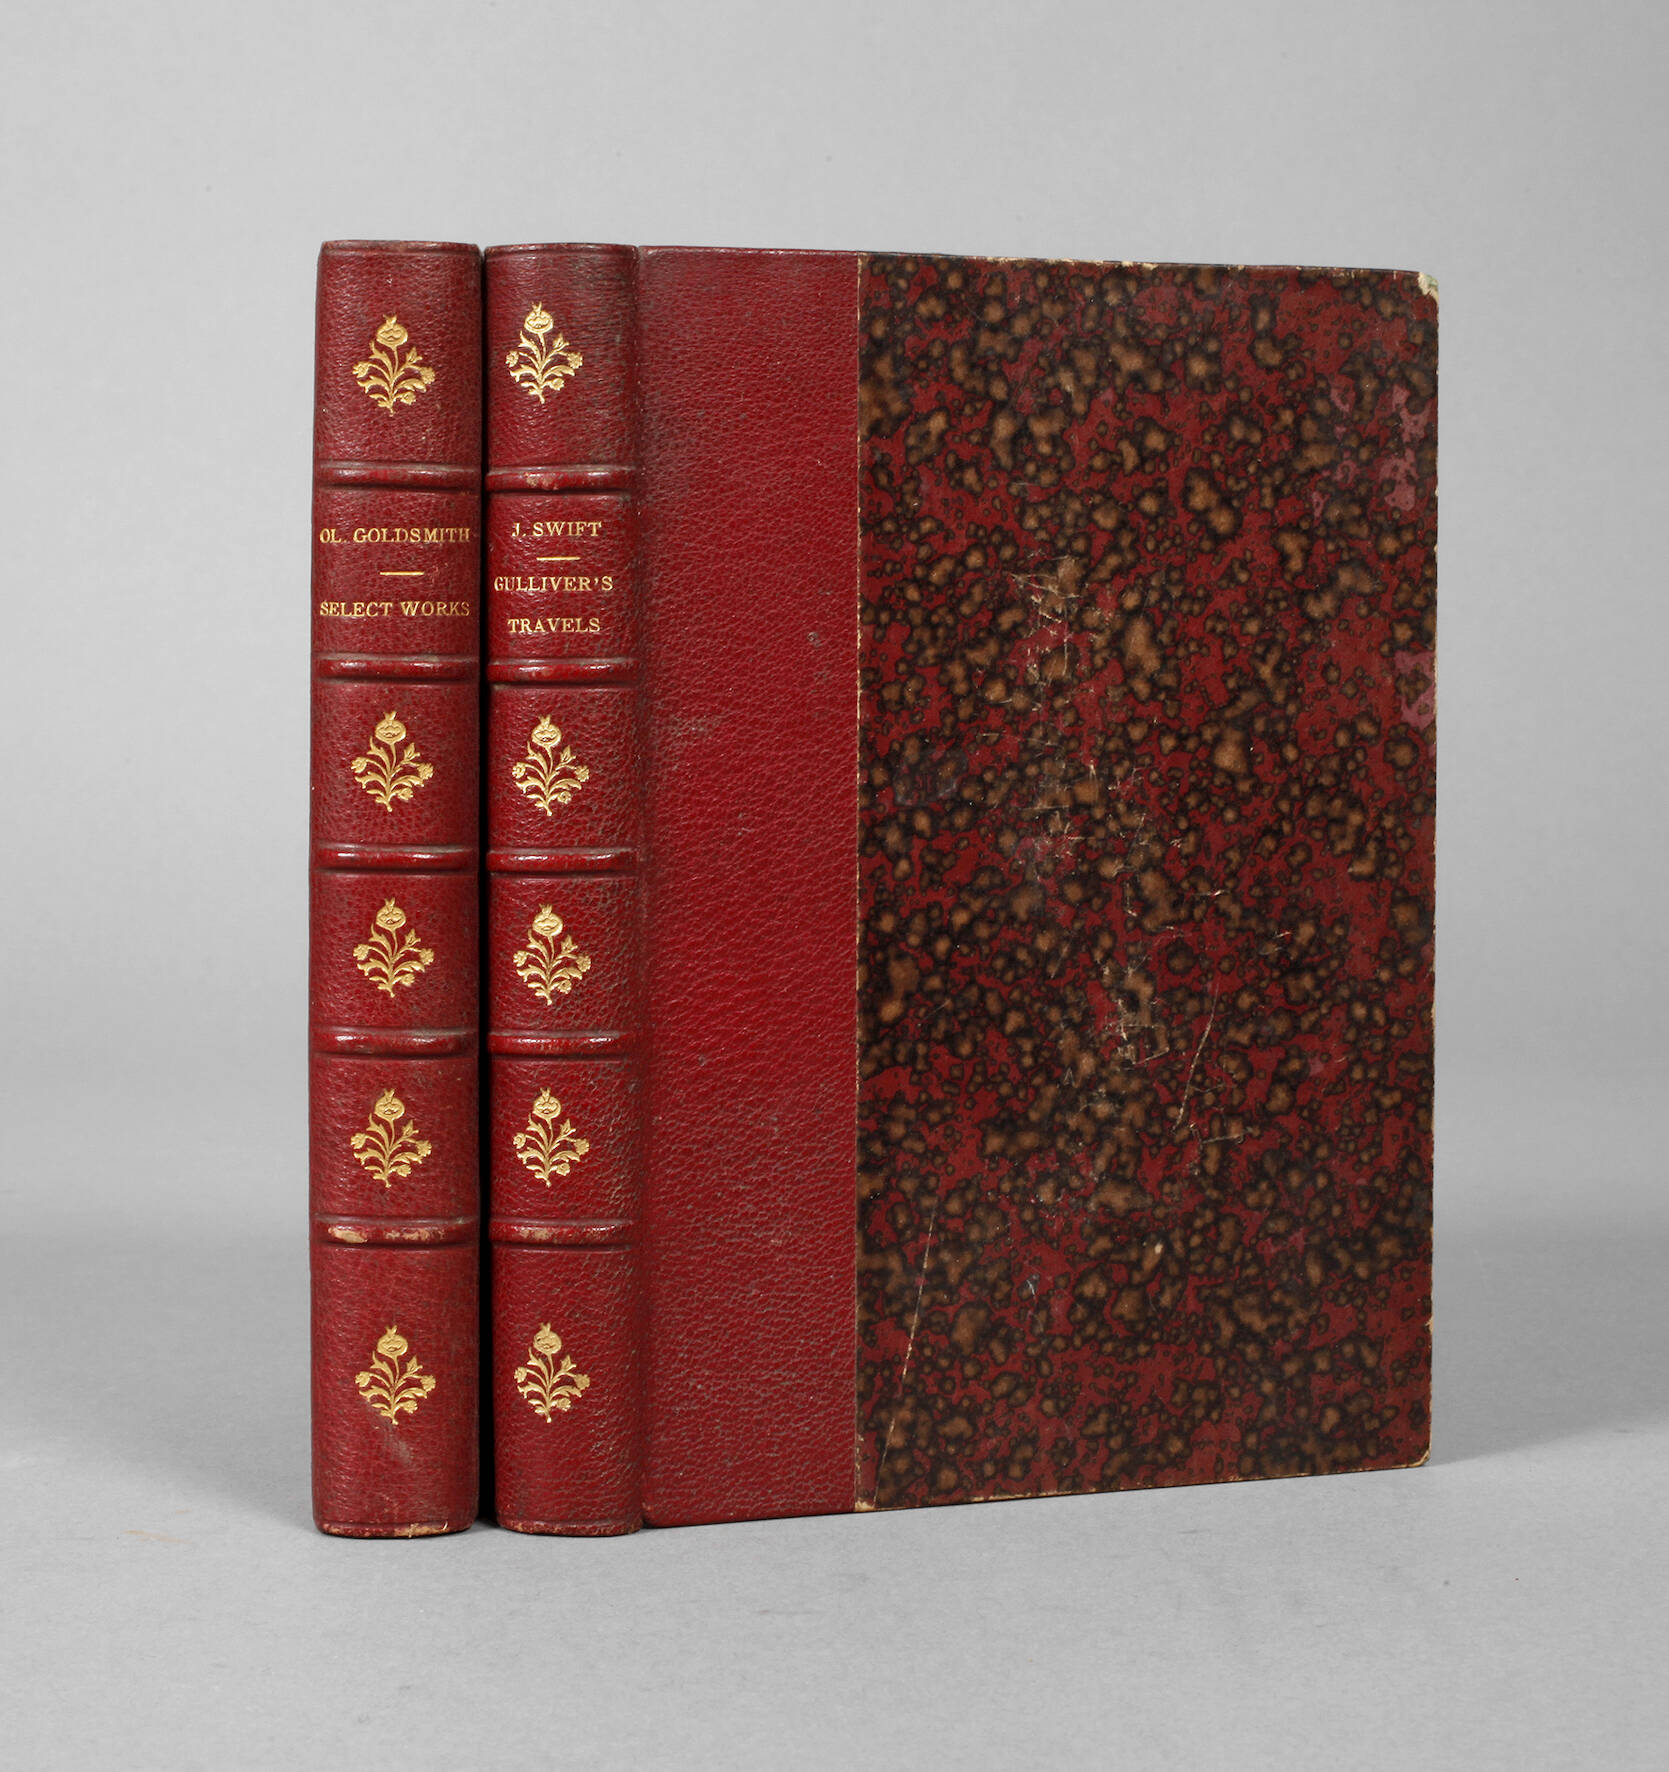 Zwei Bände Collection of British Authors